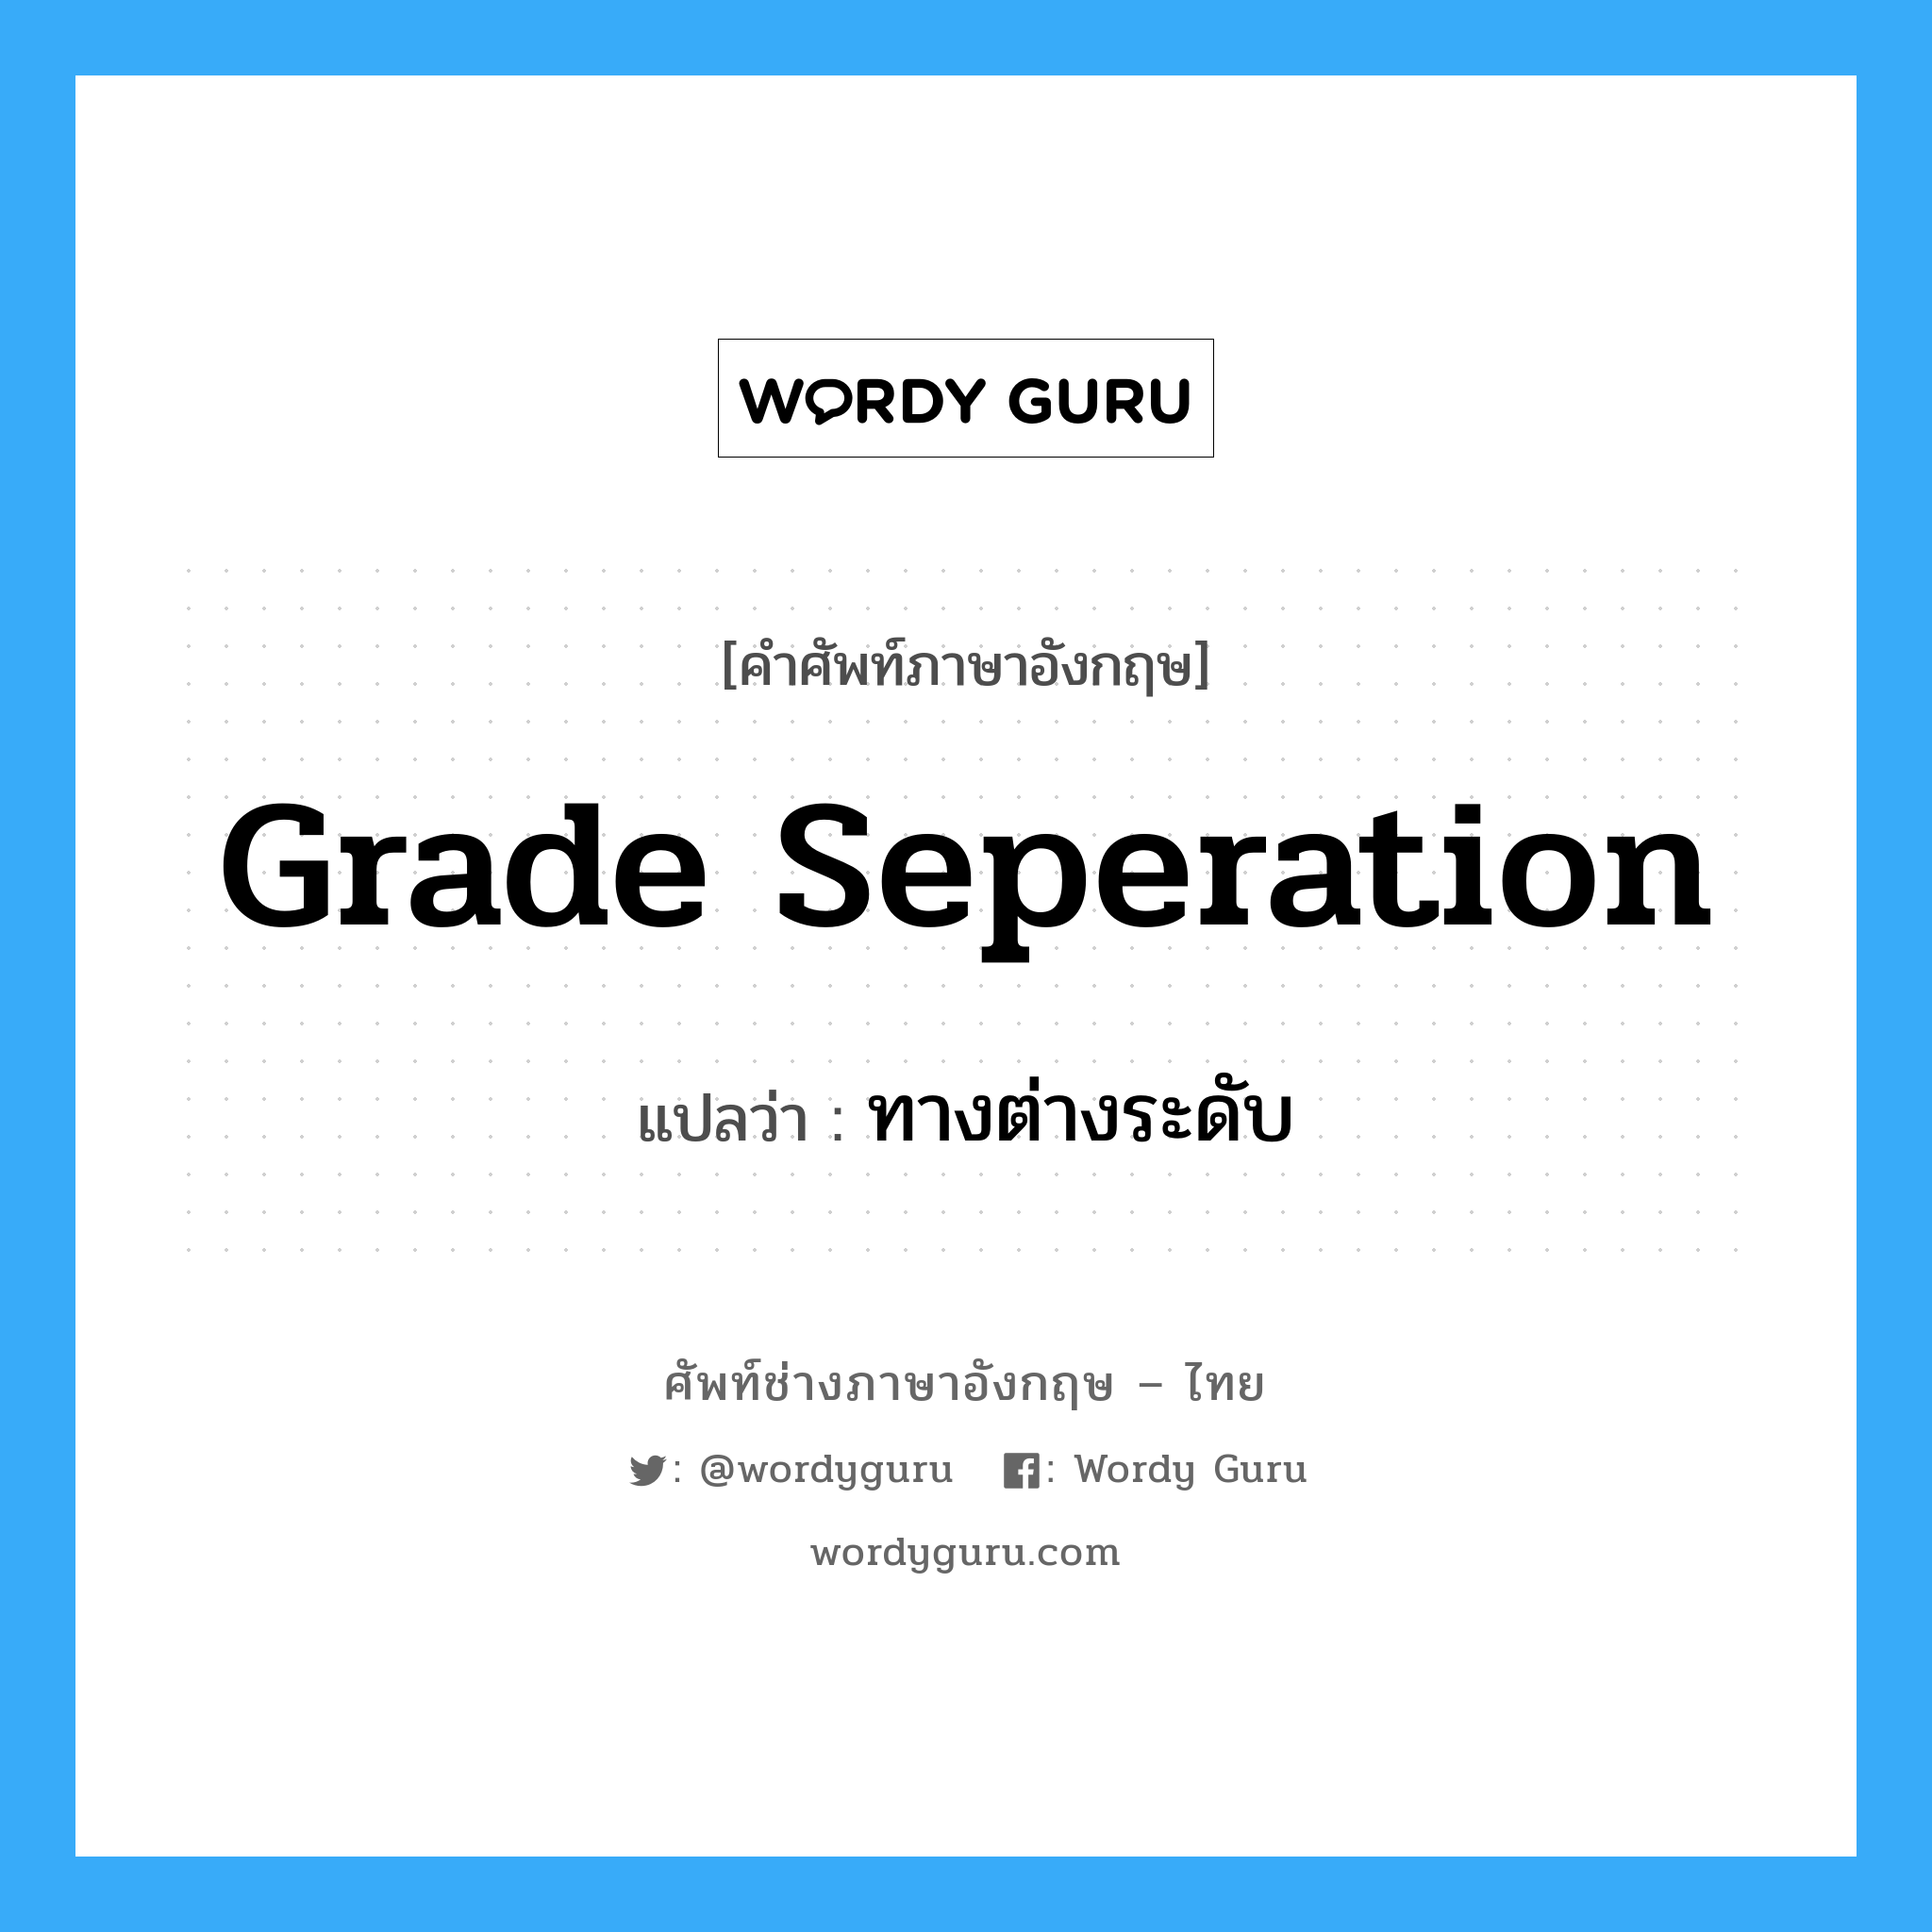 ทางต่างระดับ ภาษาอังกฤษ?, คำศัพท์ช่างภาษาอังกฤษ - ไทย ทางต่างระดับ คำศัพท์ภาษาอังกฤษ ทางต่างระดับ แปลว่า grade seperation